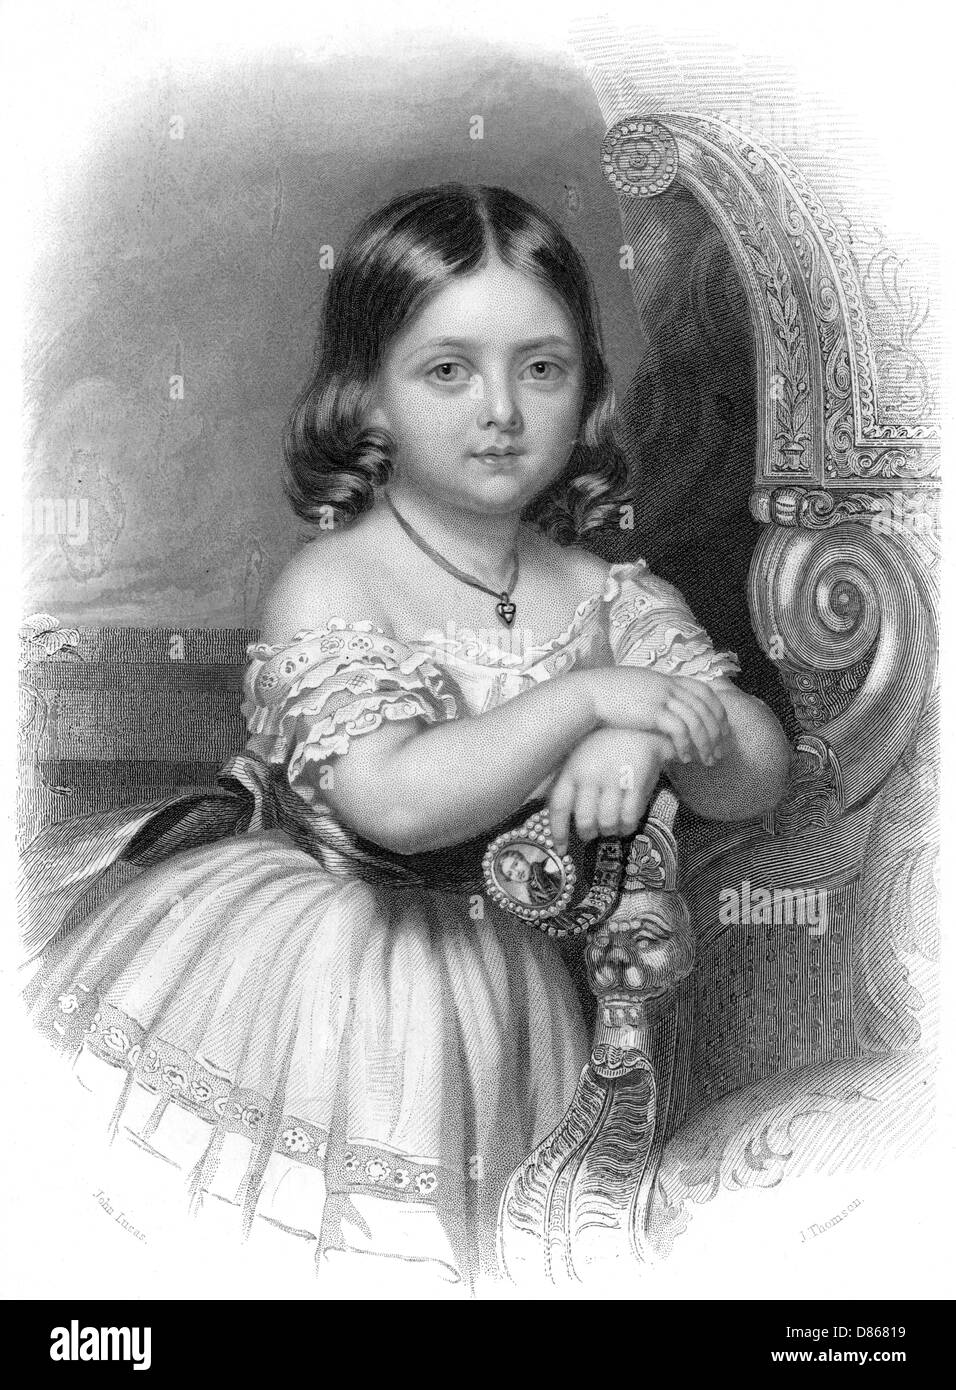 La princesse royale, fille aînée de la reine Victoria. Banque D'Images